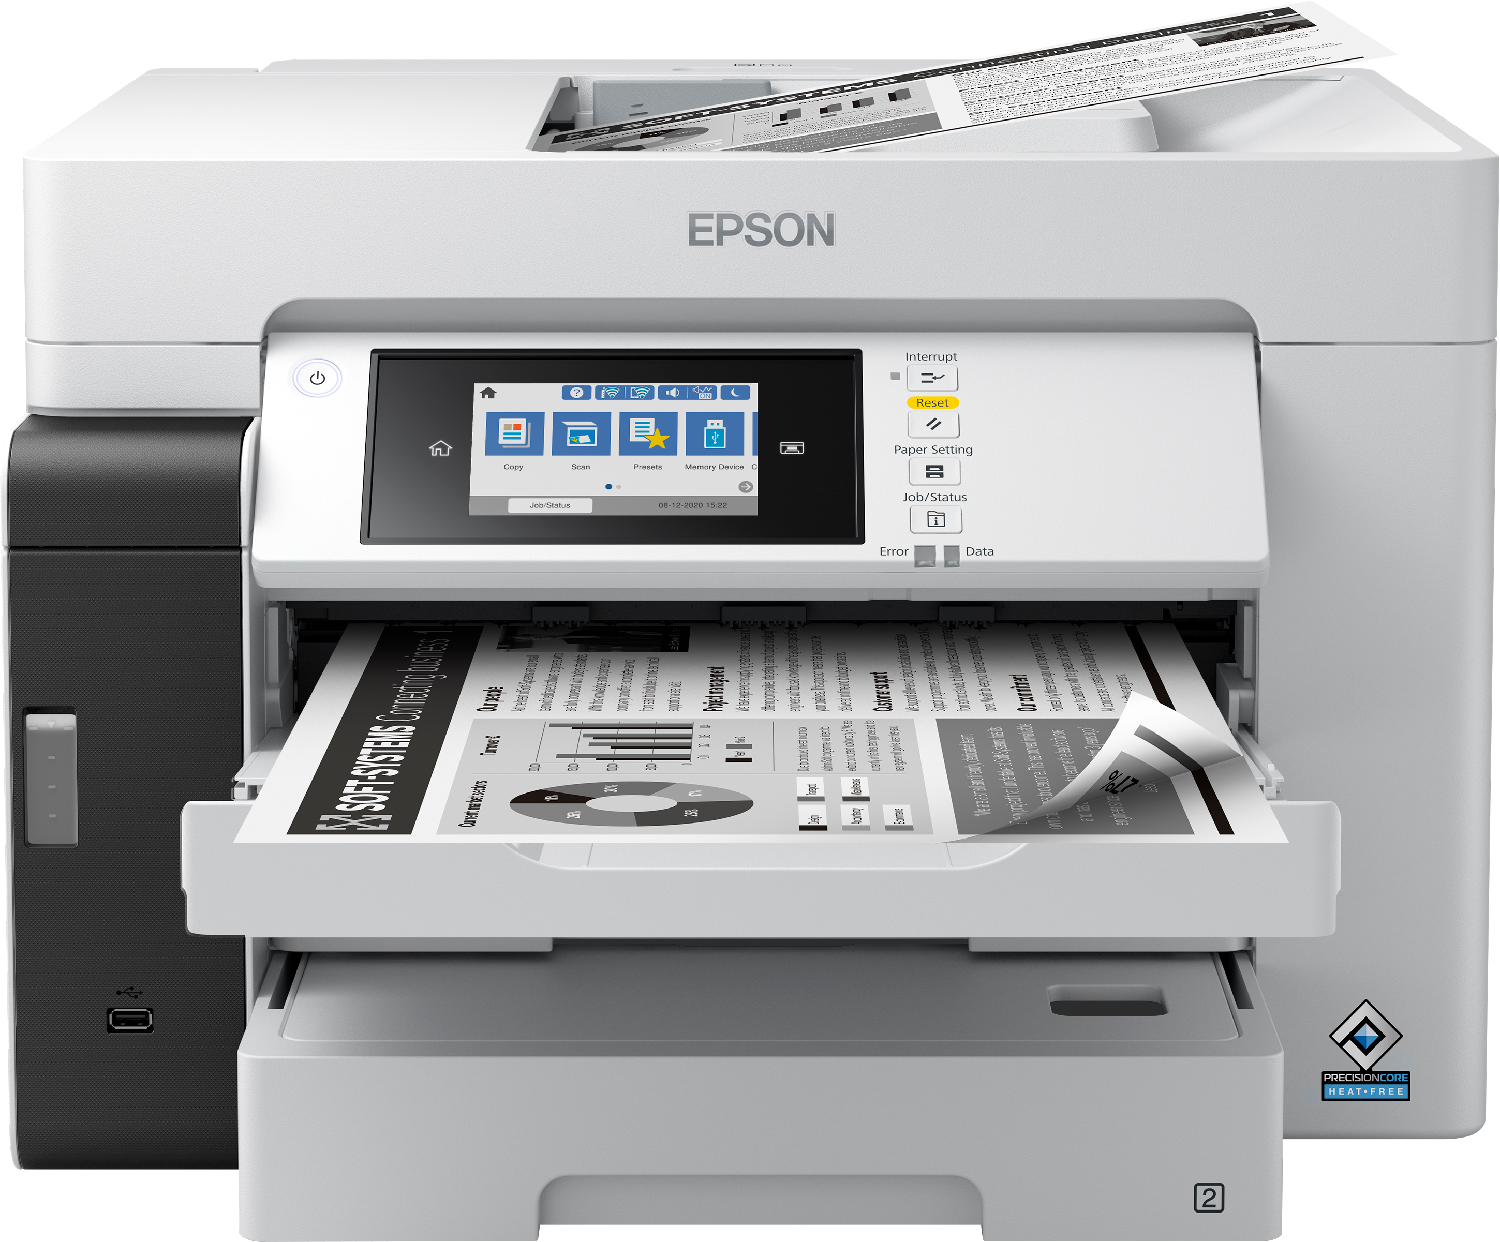 Pour les entreprises, Gamme de scanners professionnels Epson